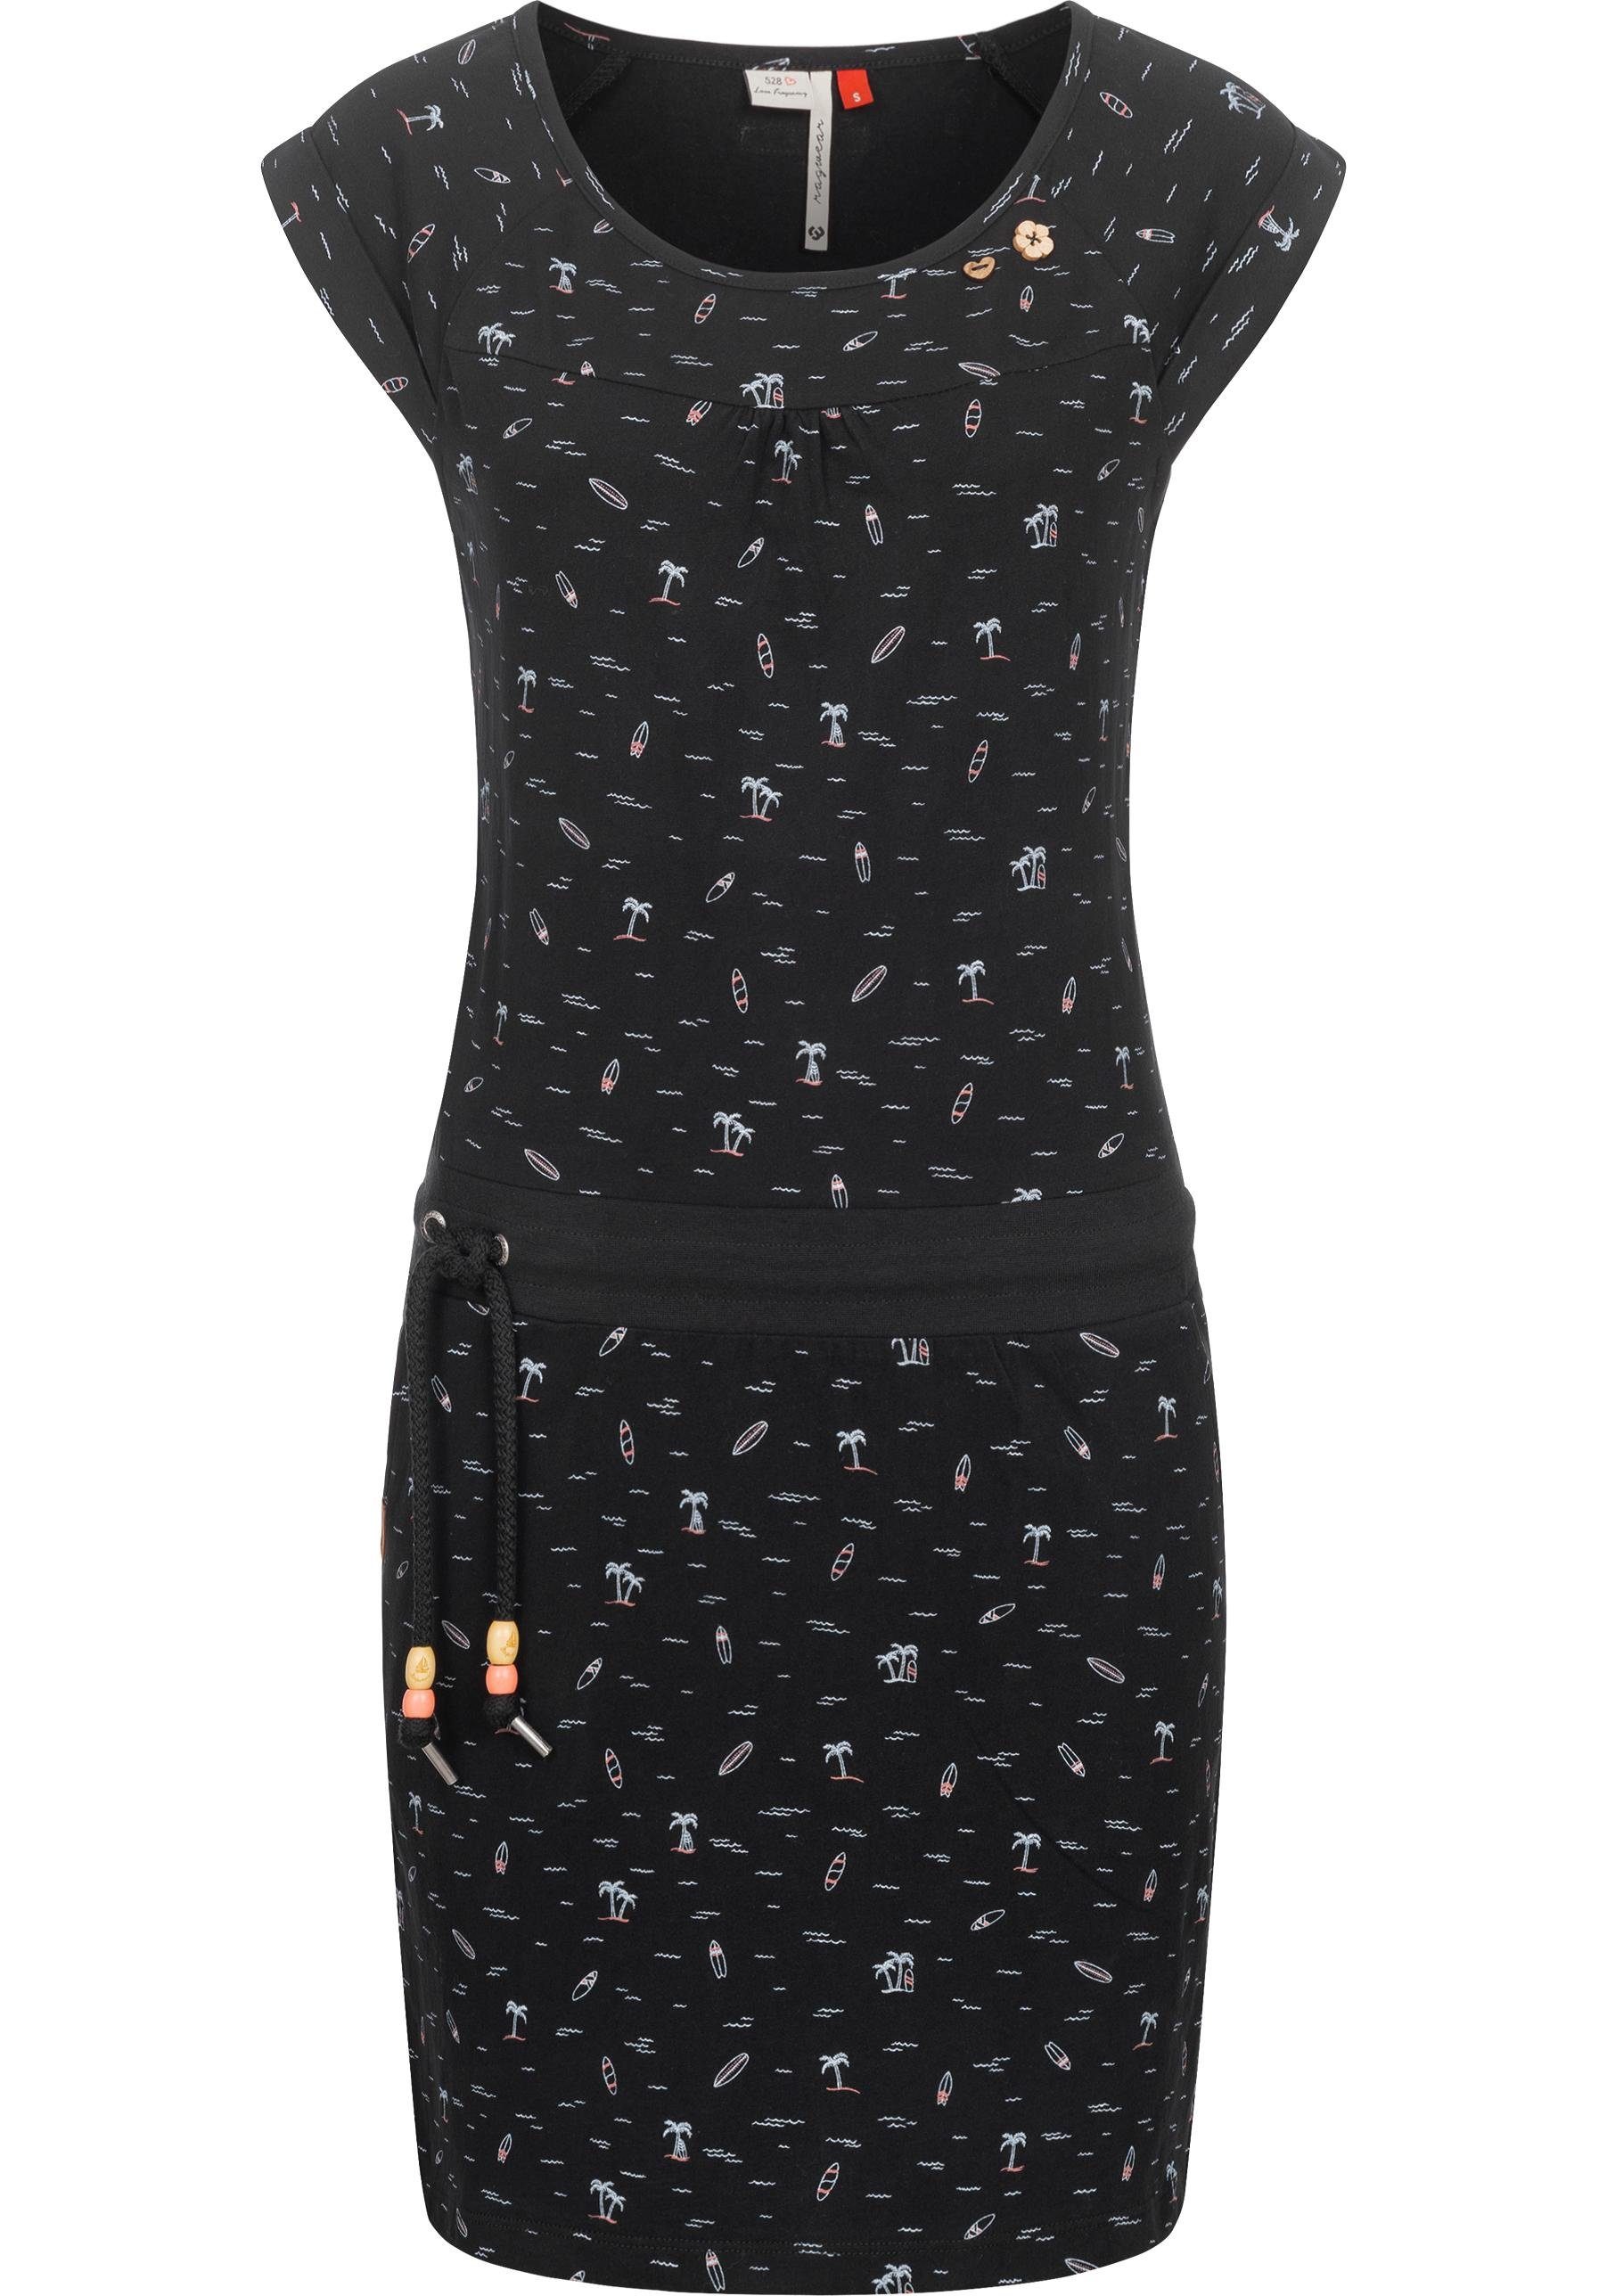 Ragwear Sommerkleid Penelope leichtes Baumwoll Kleid mit Print dark | Wickelkleider